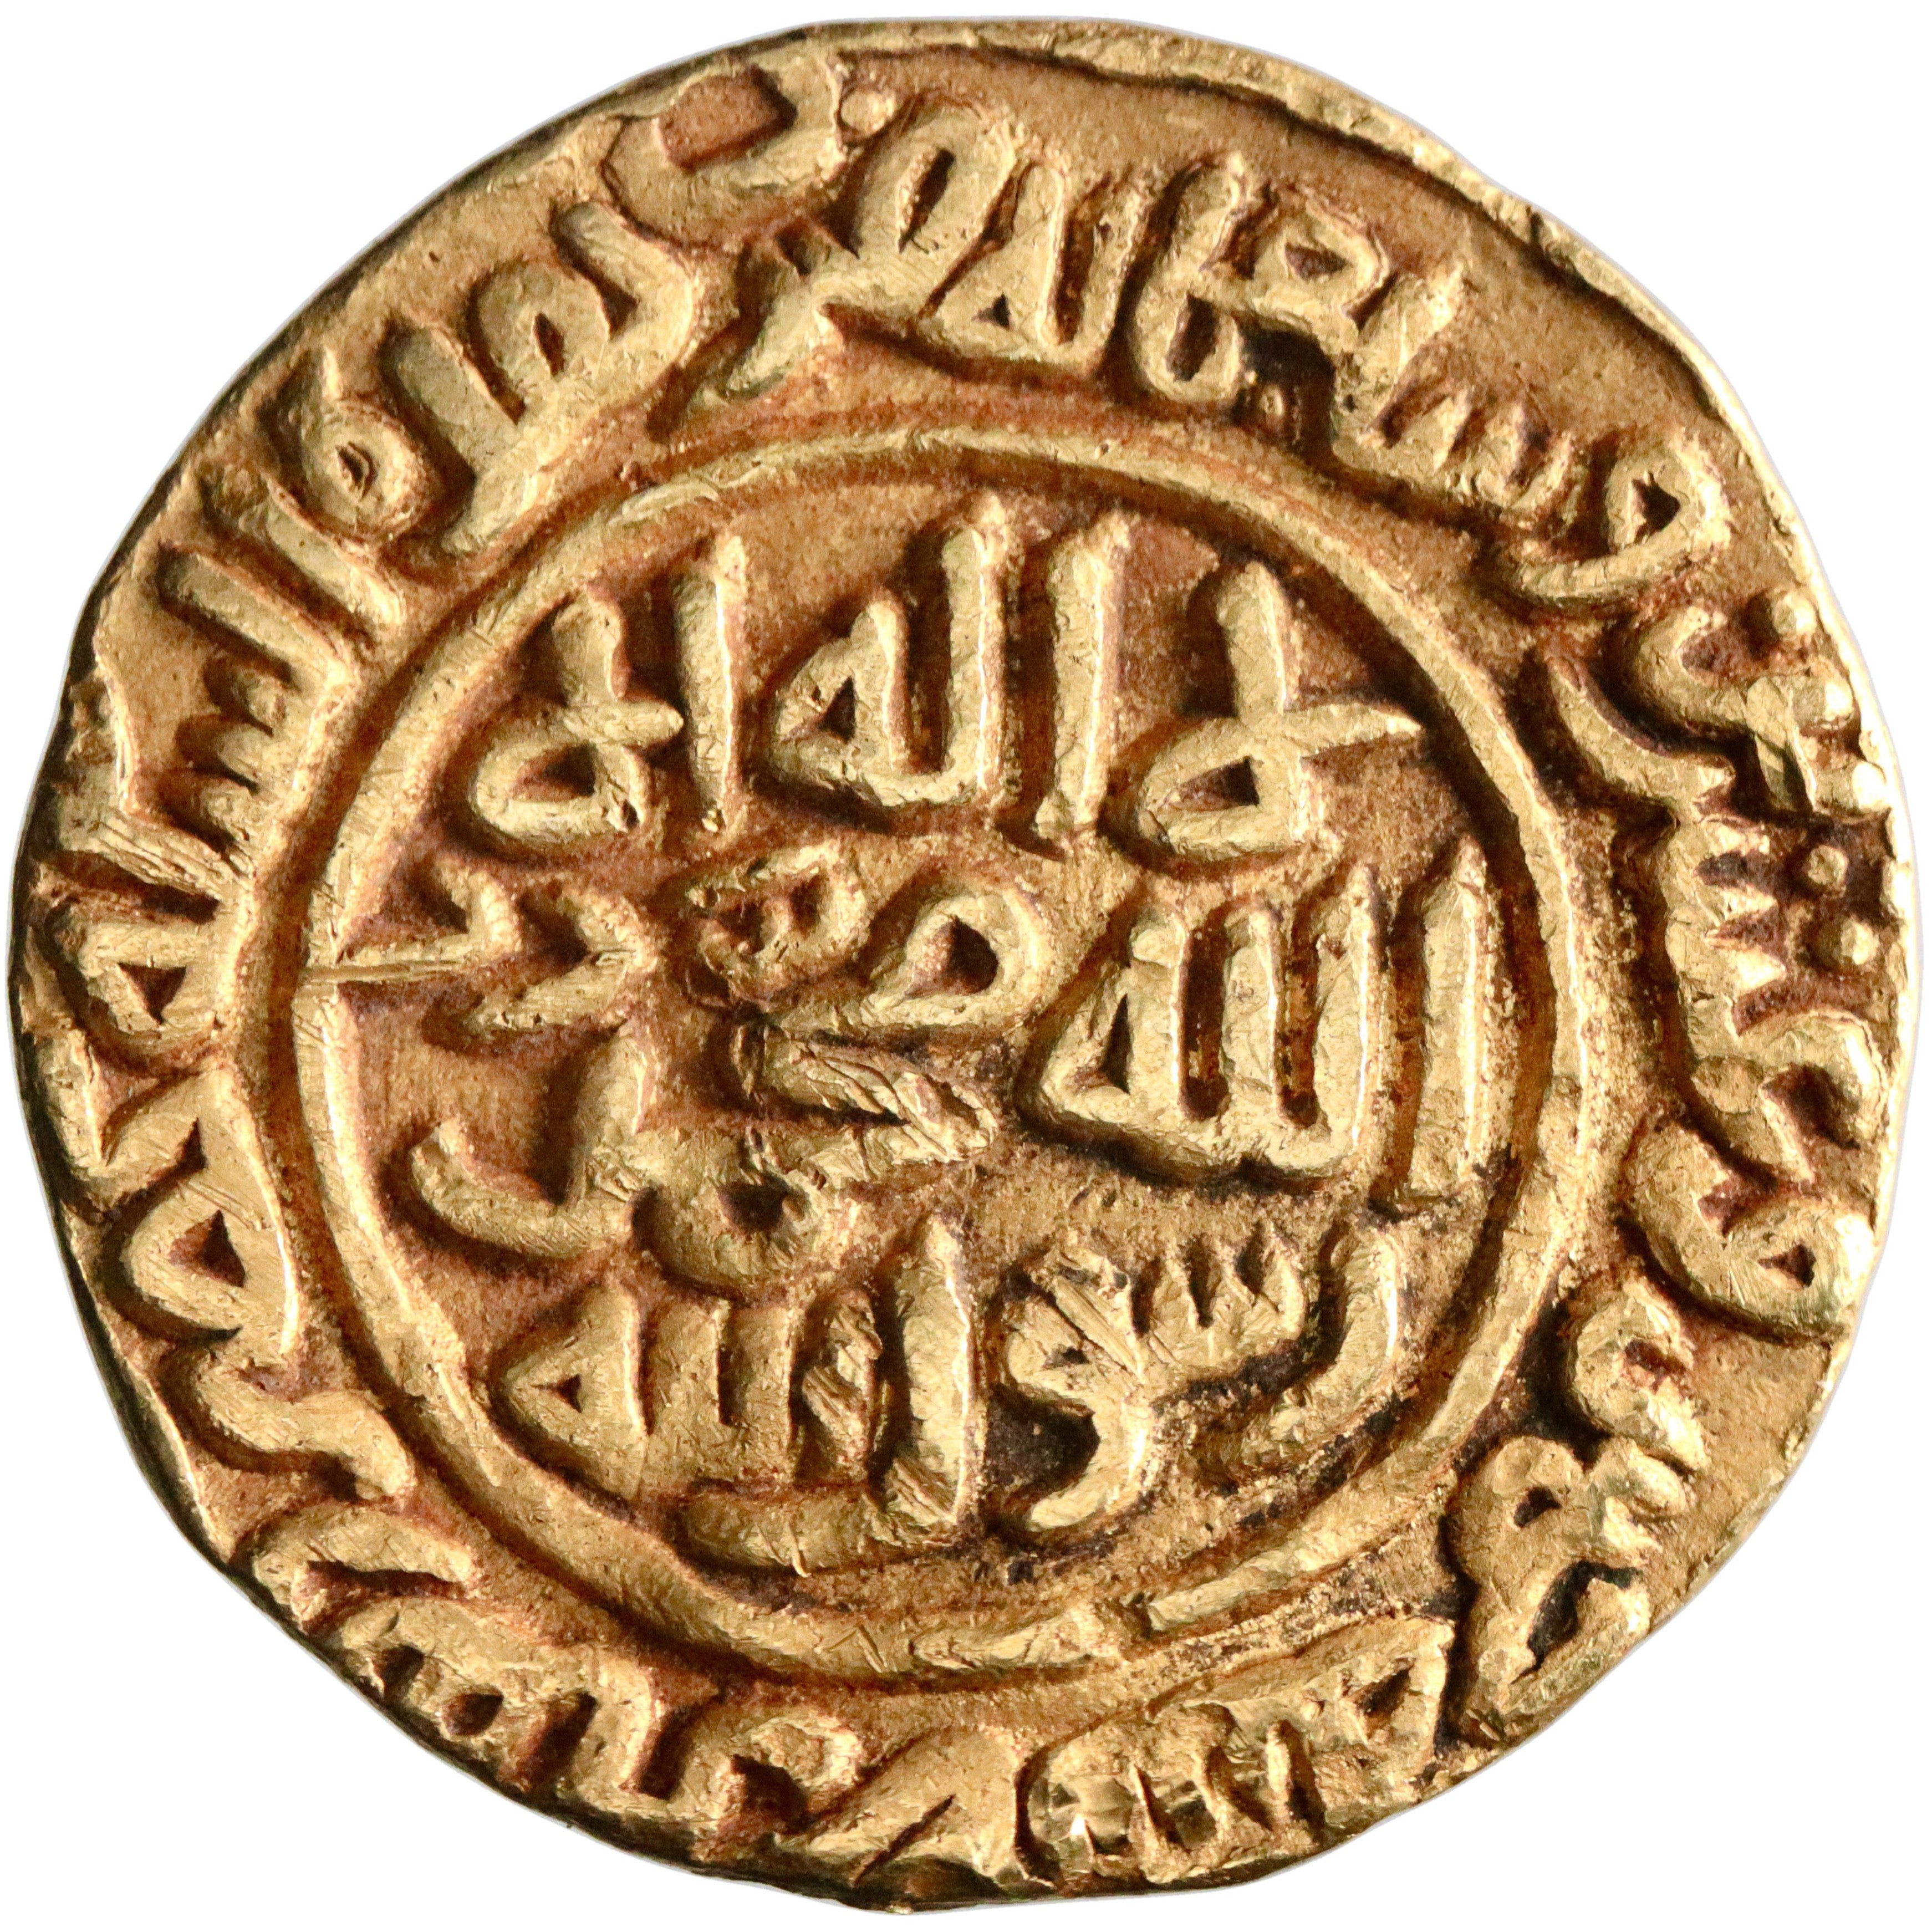 Delhi, Muhammad III ibn Tughluq, gold tanka, Hadrat Dehli (Delhi) mint, AH 725, citing the Rashidun caliphs